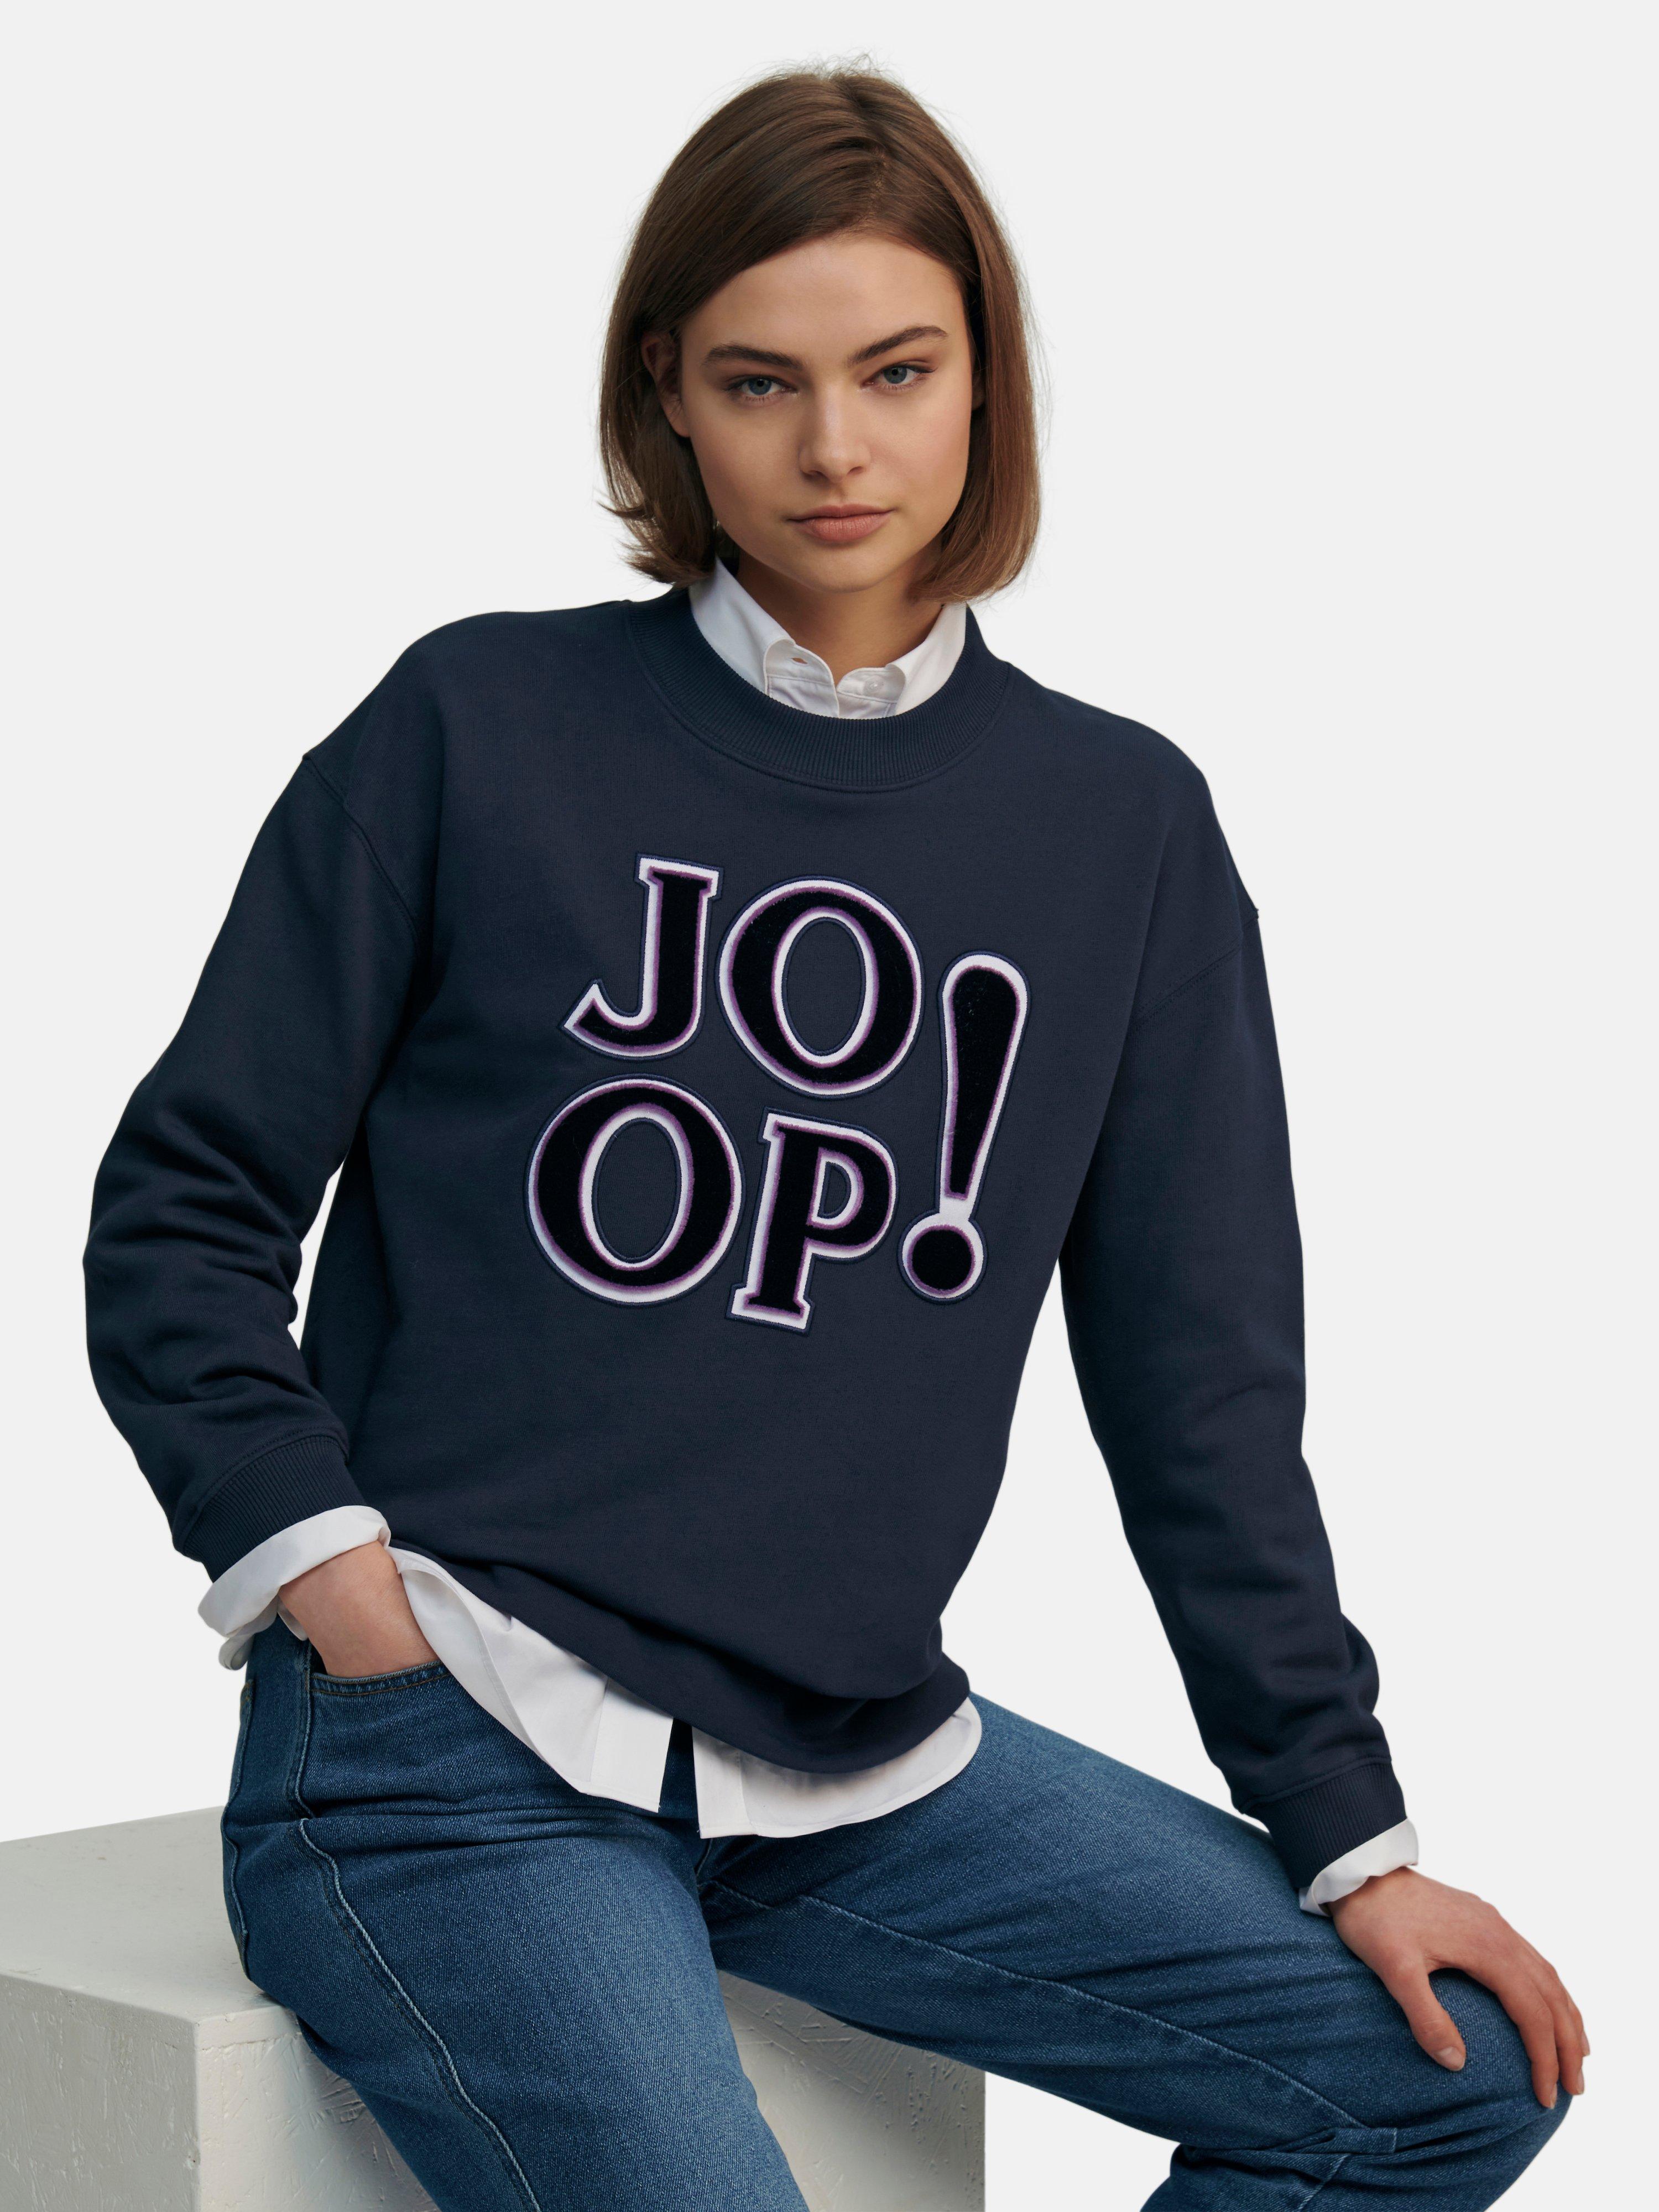 Joop! - Sweatshirt